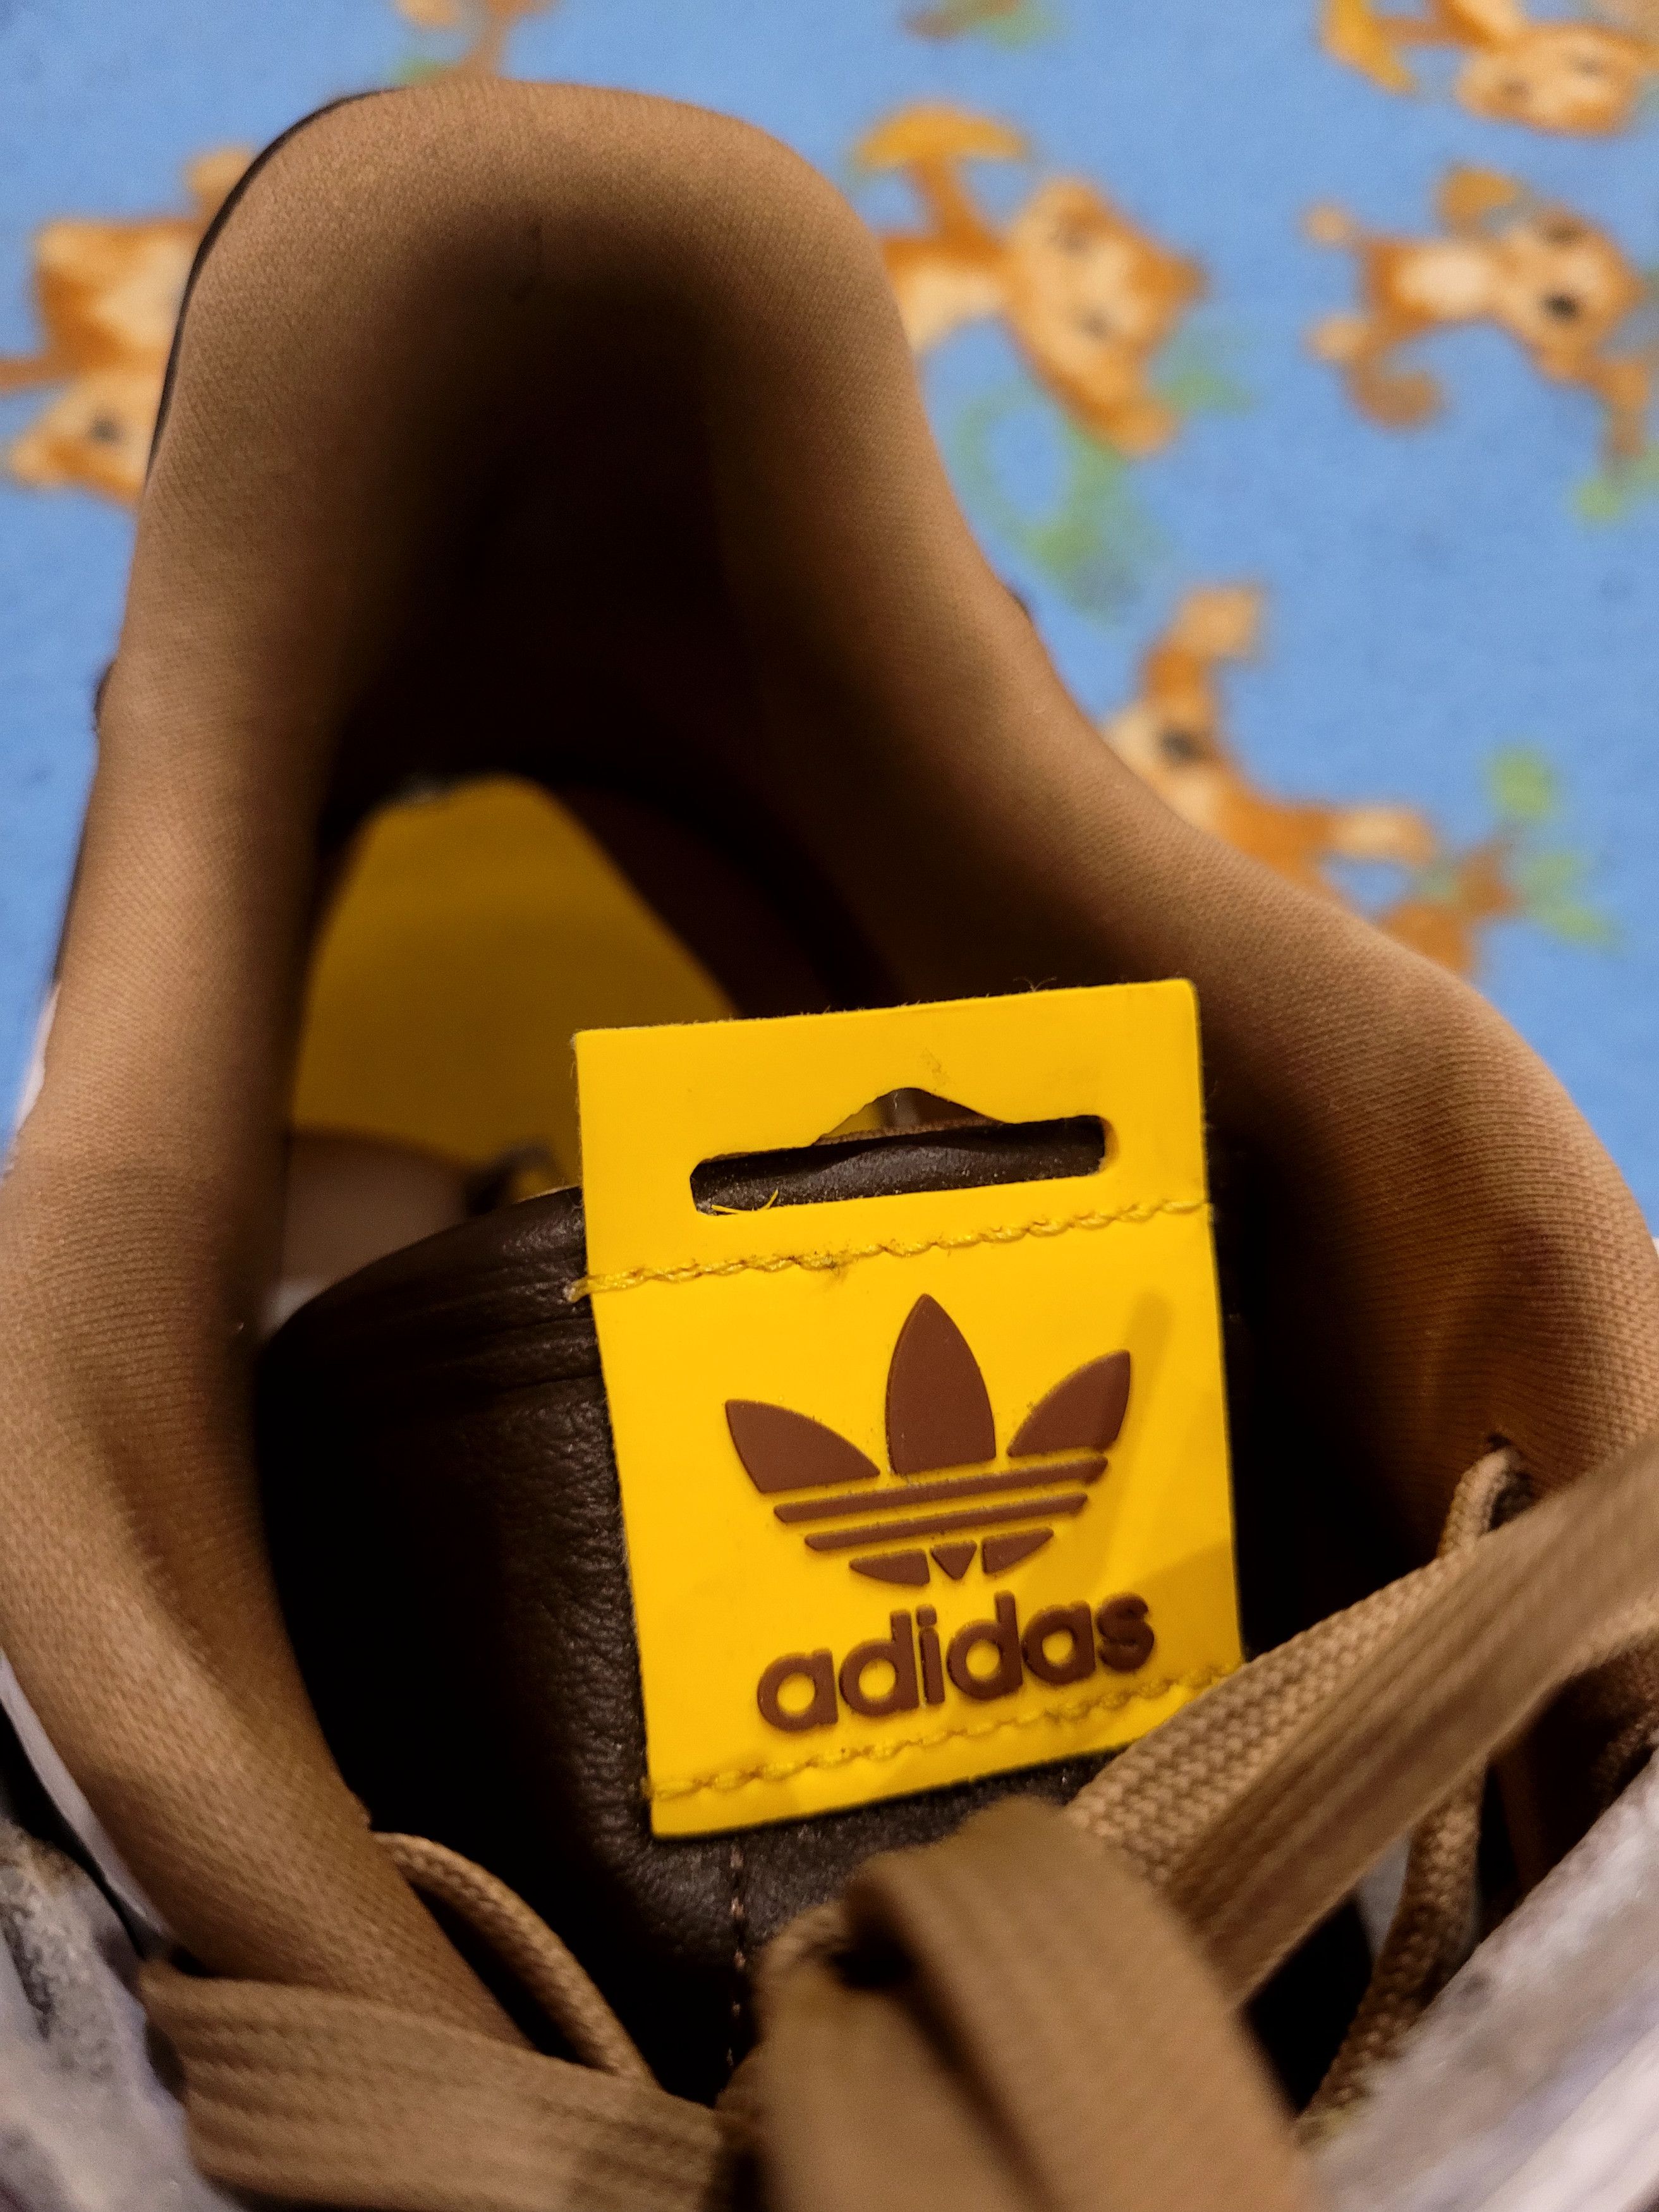 Adidas Adidas Forum x M&m's white/ brown Size US 11 / EU 44 - 14 Thumbnail